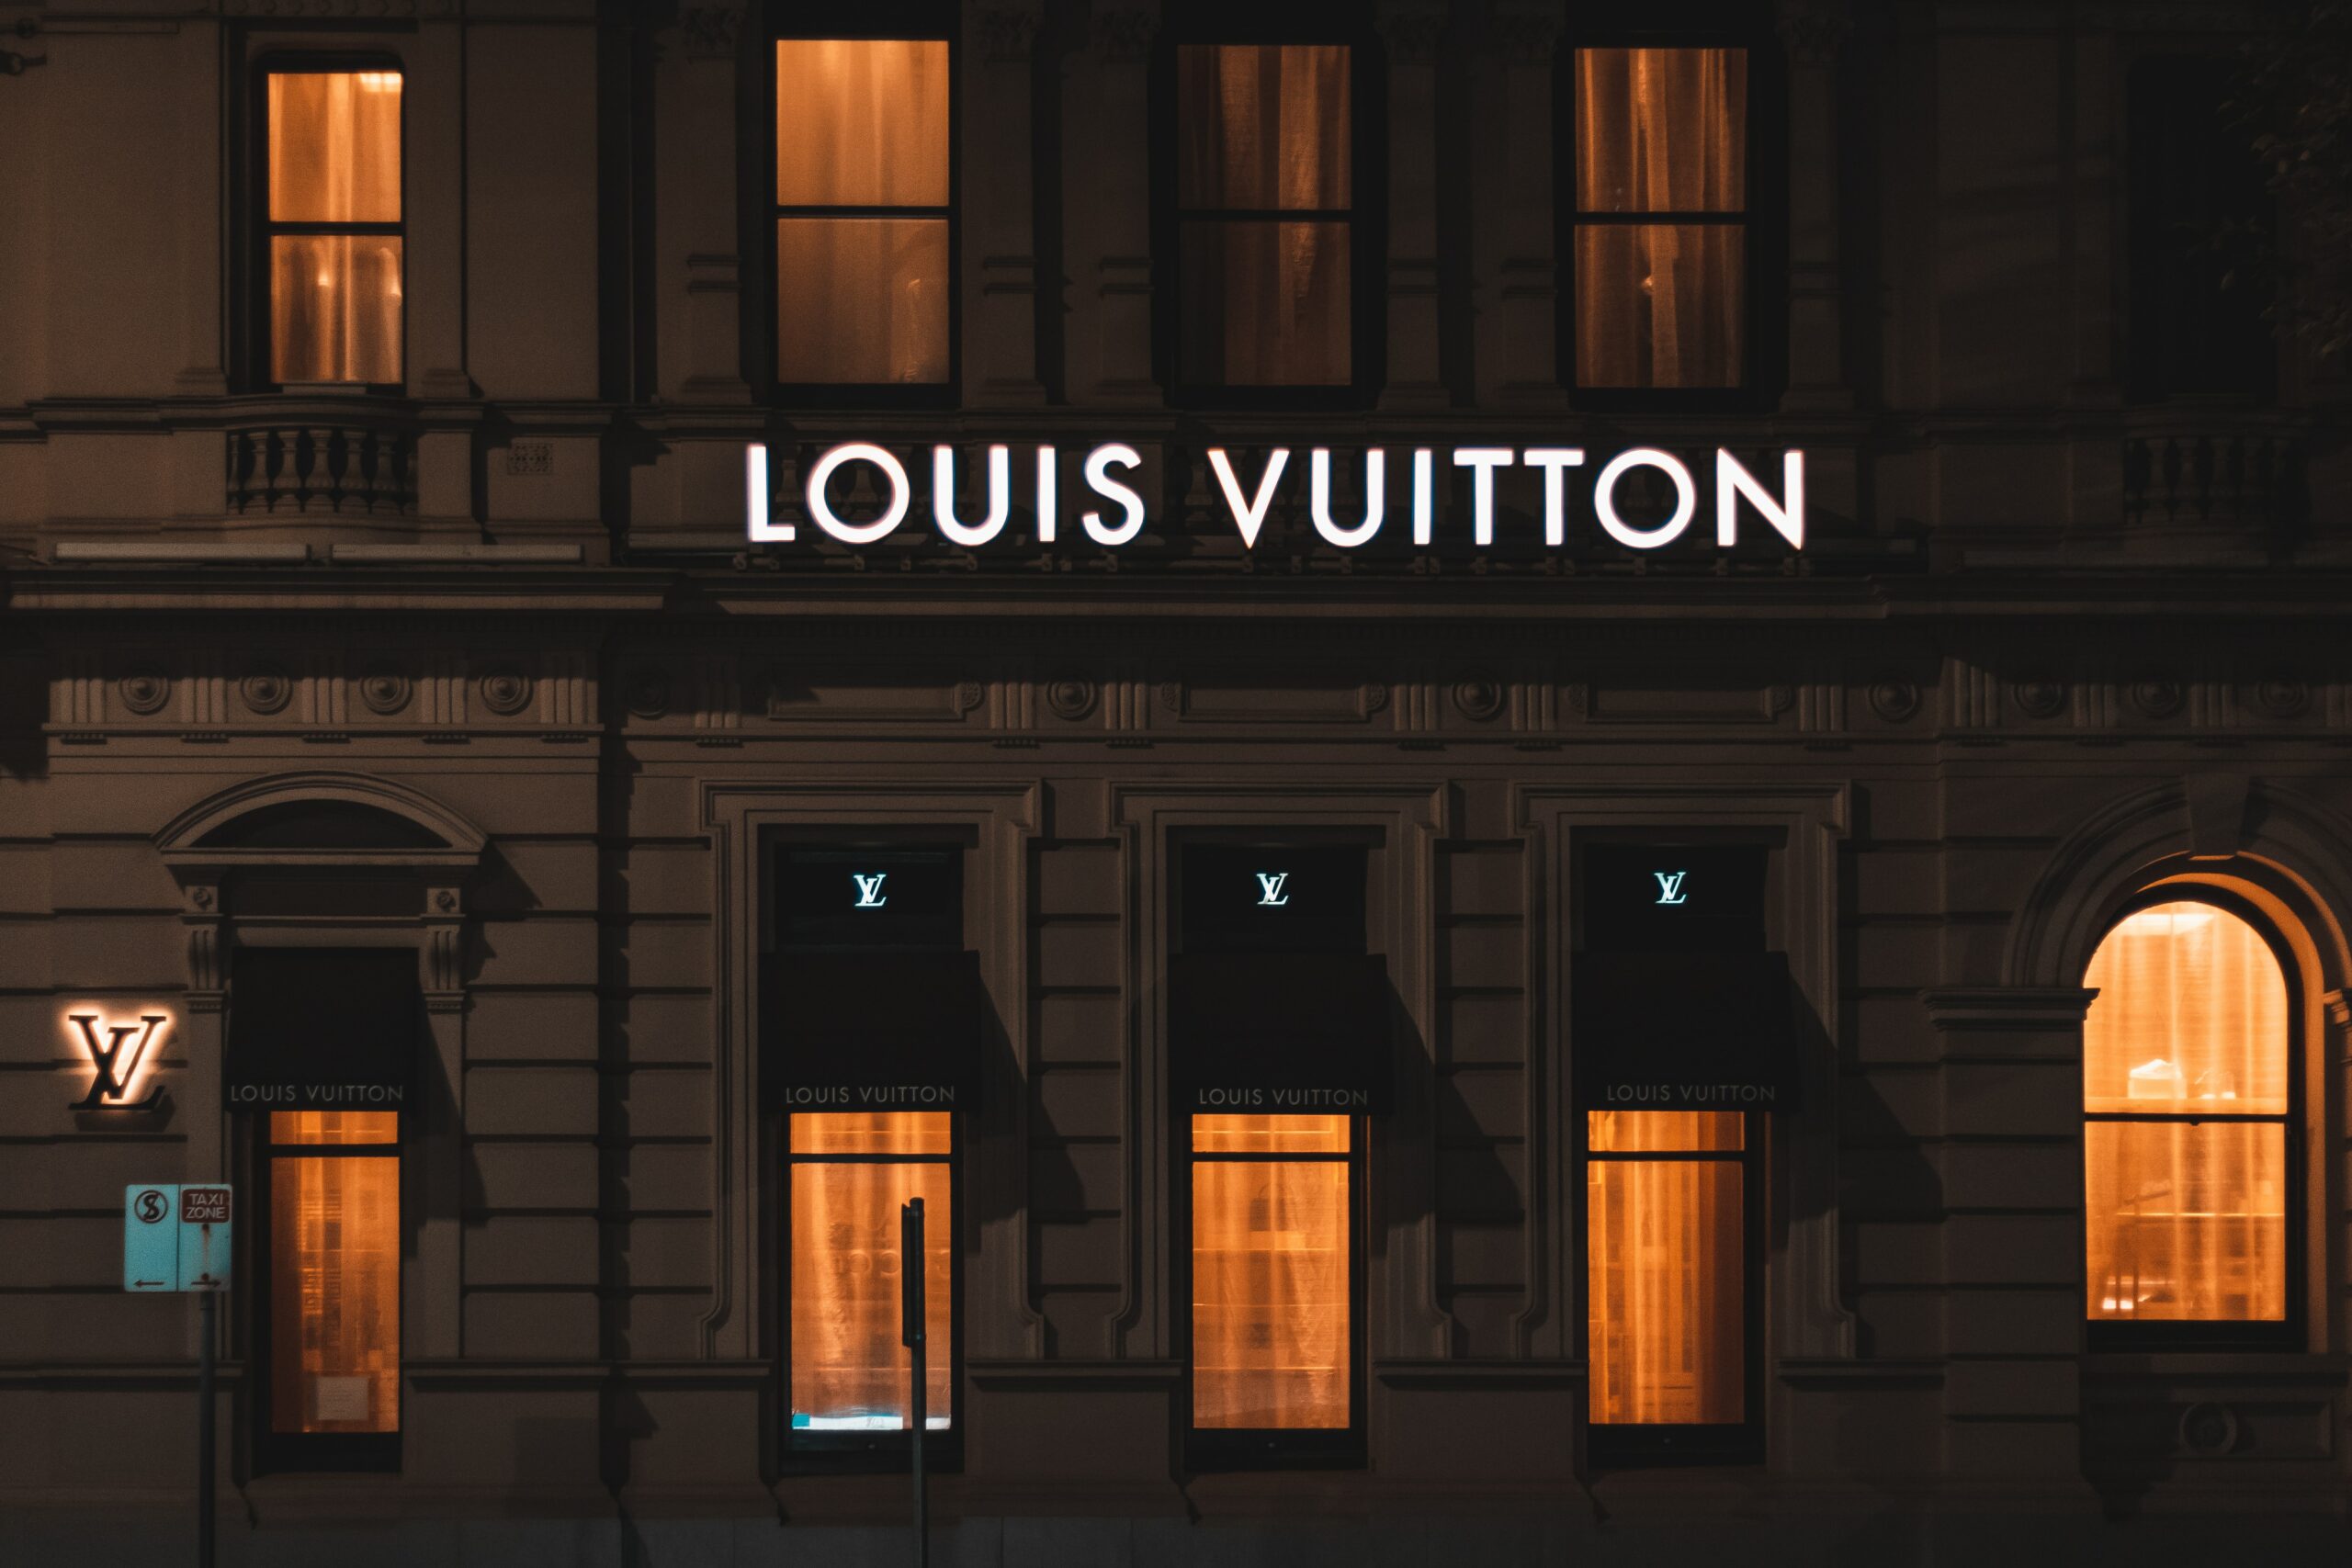 Lous Vuitton Monogram Side Trunk - THE PURSE AFFAIR